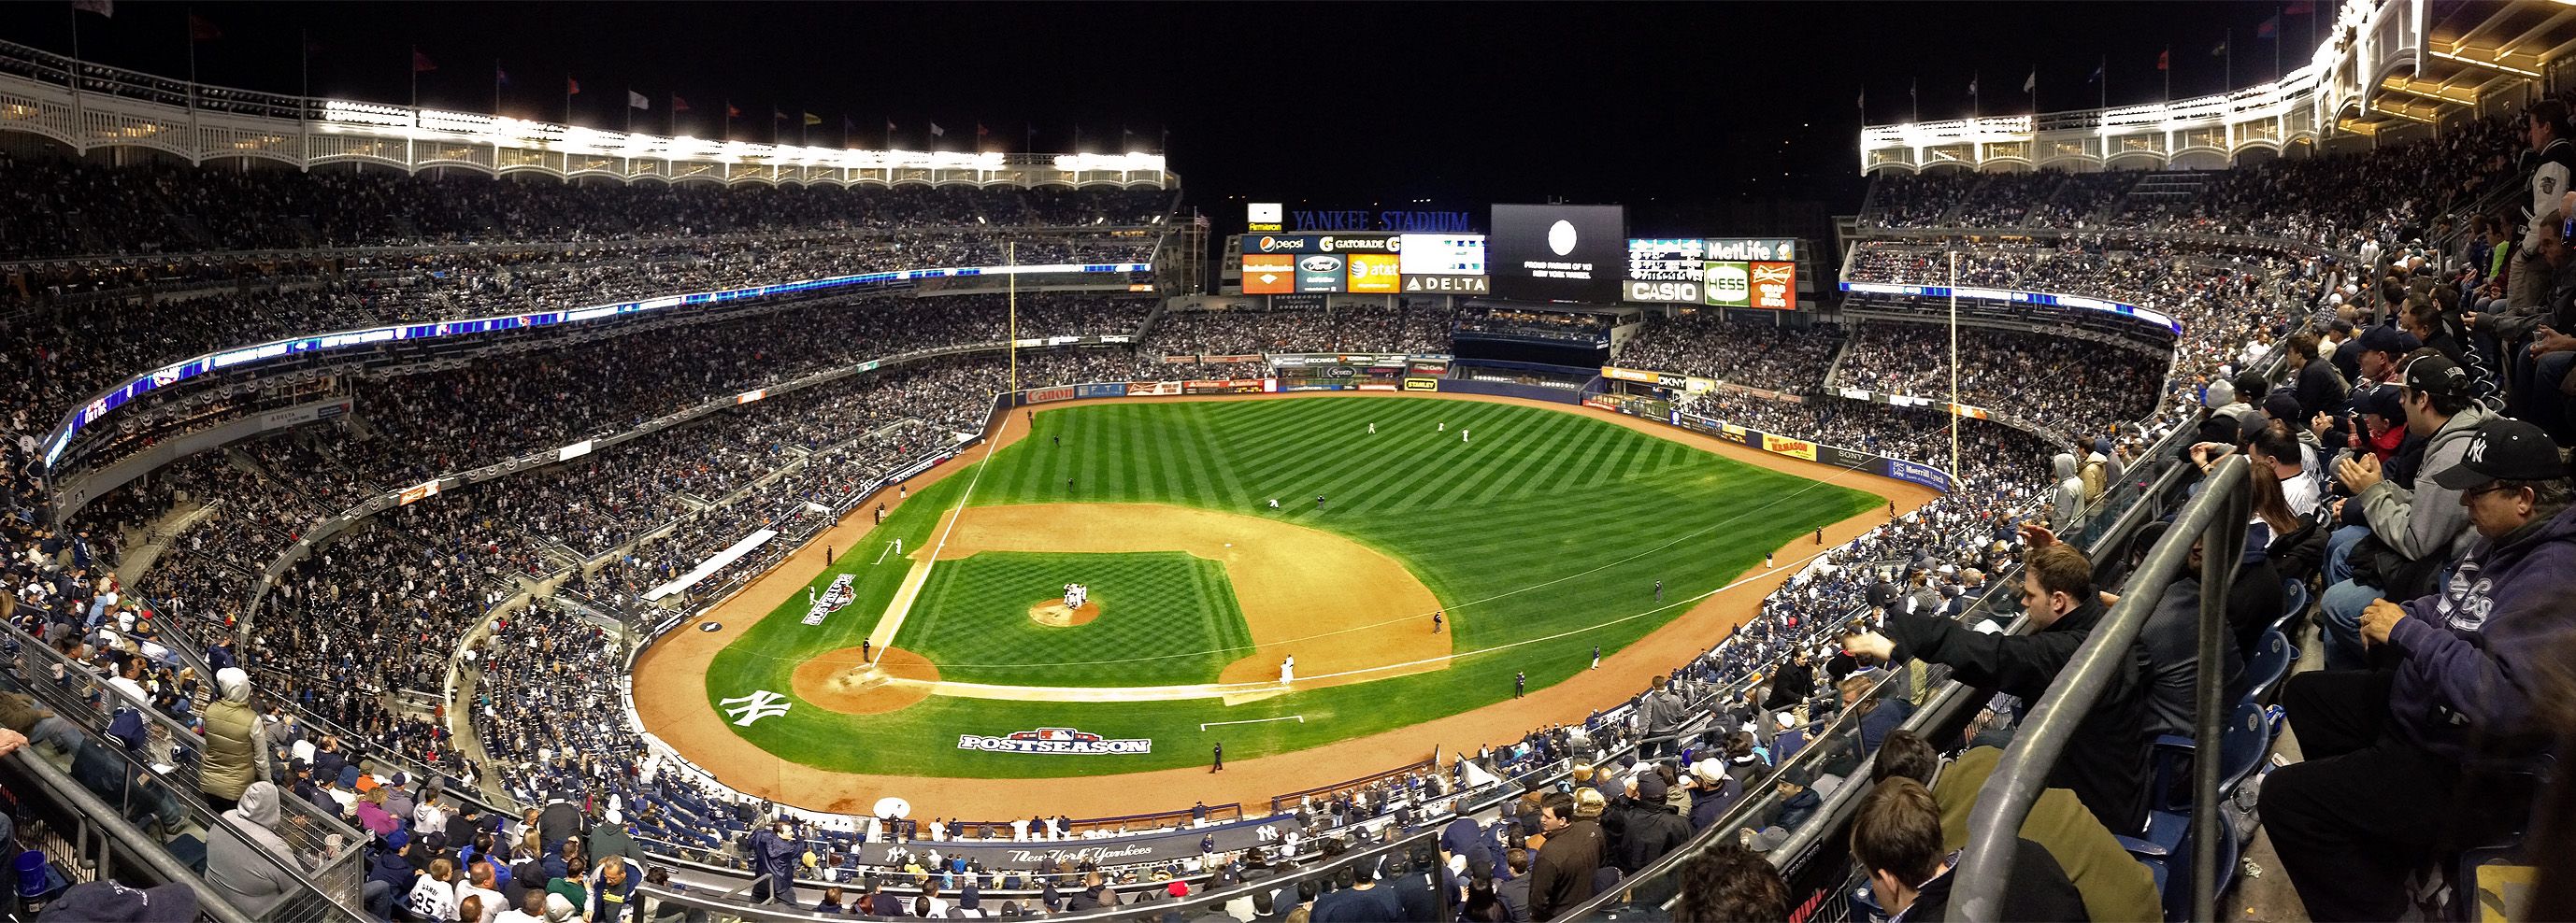 Yankee Stadium iPhone Wallpaper